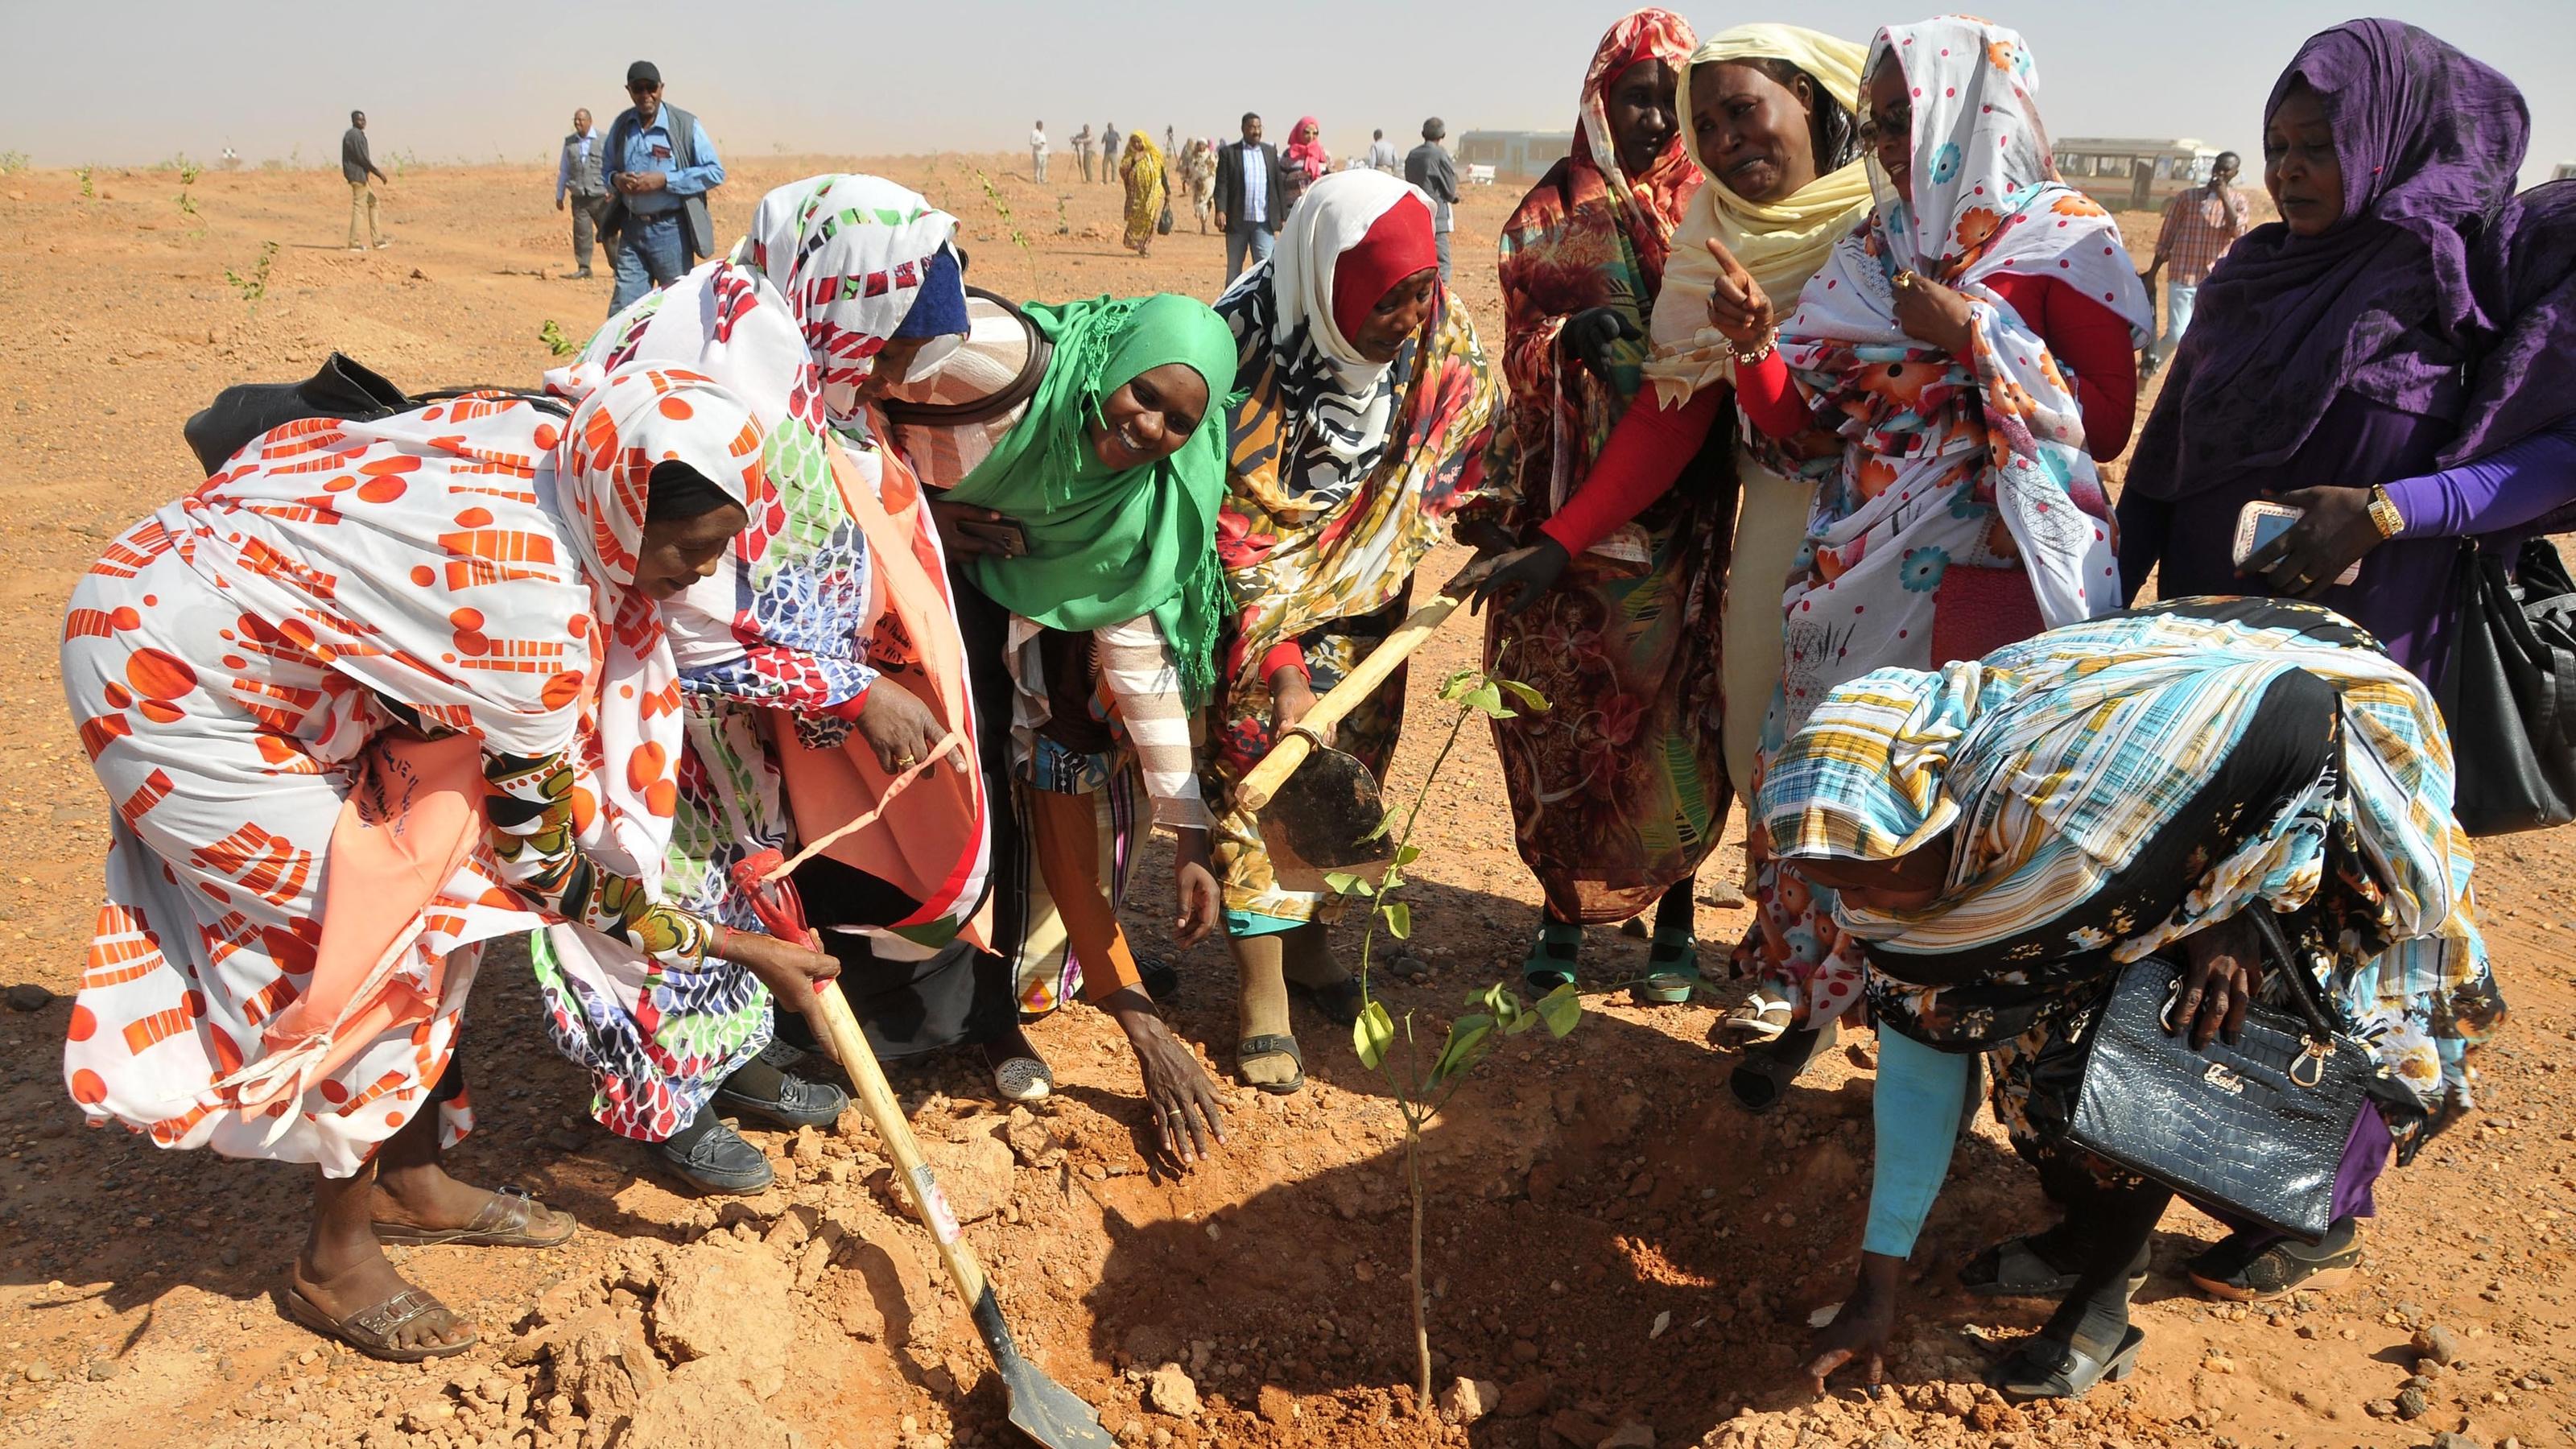 Menschen pflanzen Bäume am Stadtrand von Khartoum, Sudan, 12. Januar 2017. Die Behörden des sudanesischen Staates Khartum haben mit der Pflanzung von rund 1.000 Bäumen im Rahmen des Grüngürtelprojekts des Staates begonnen, das Teil der Großen Grünen